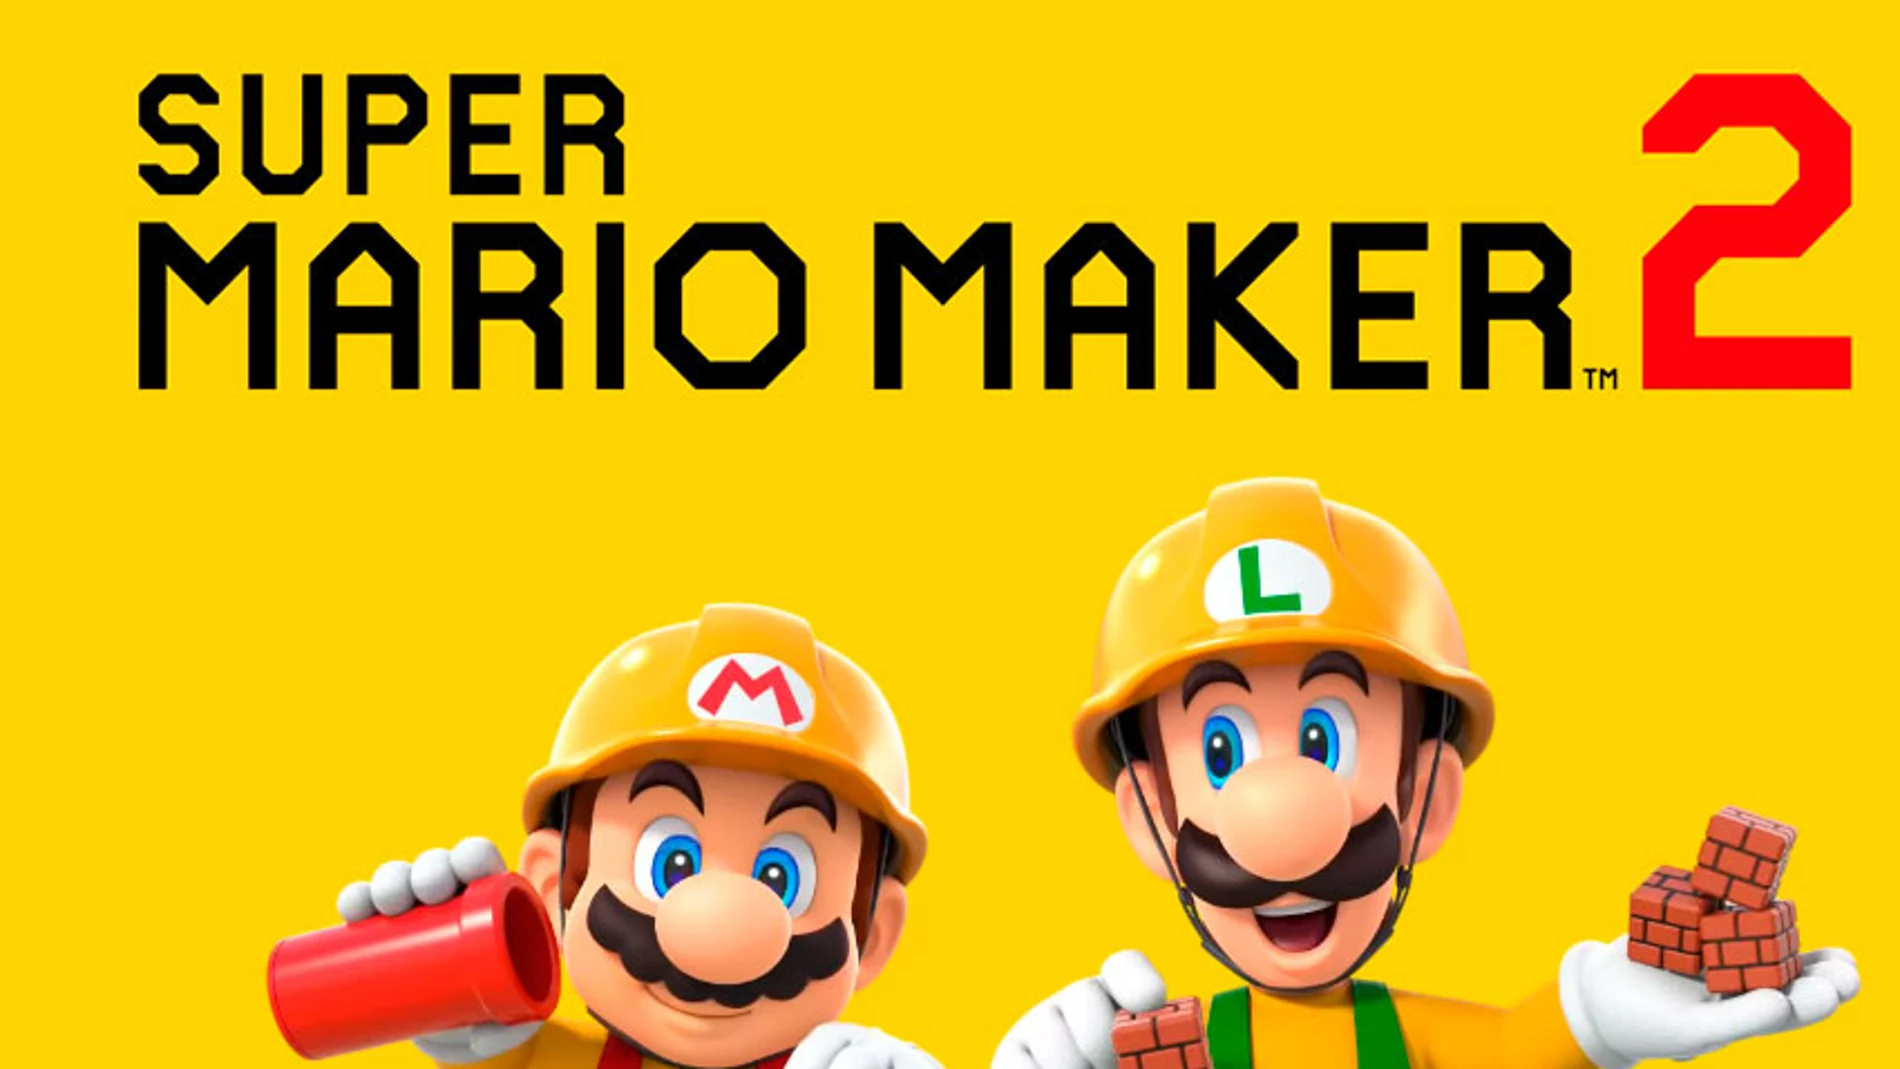 Imagen promocional de Super Mario Maker 2